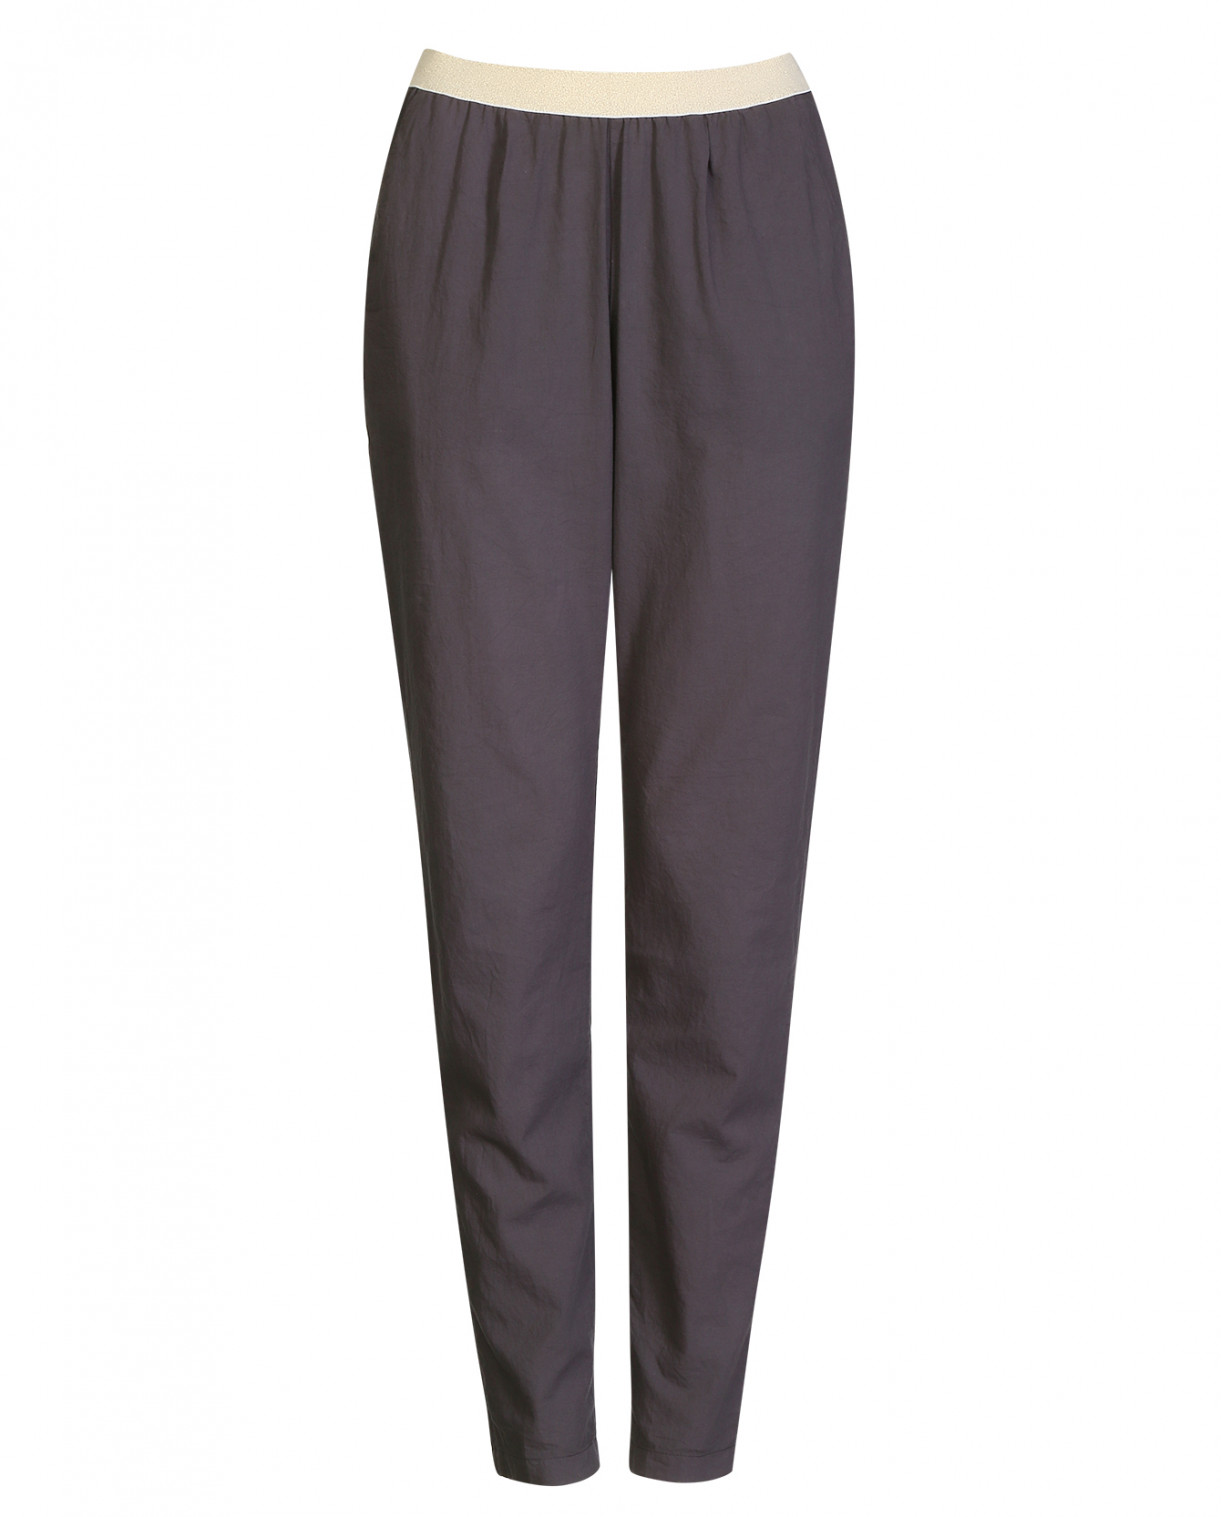 Хлопковые брюки на резинке Hartford  –  Общий вид  – Цвет:  Серый